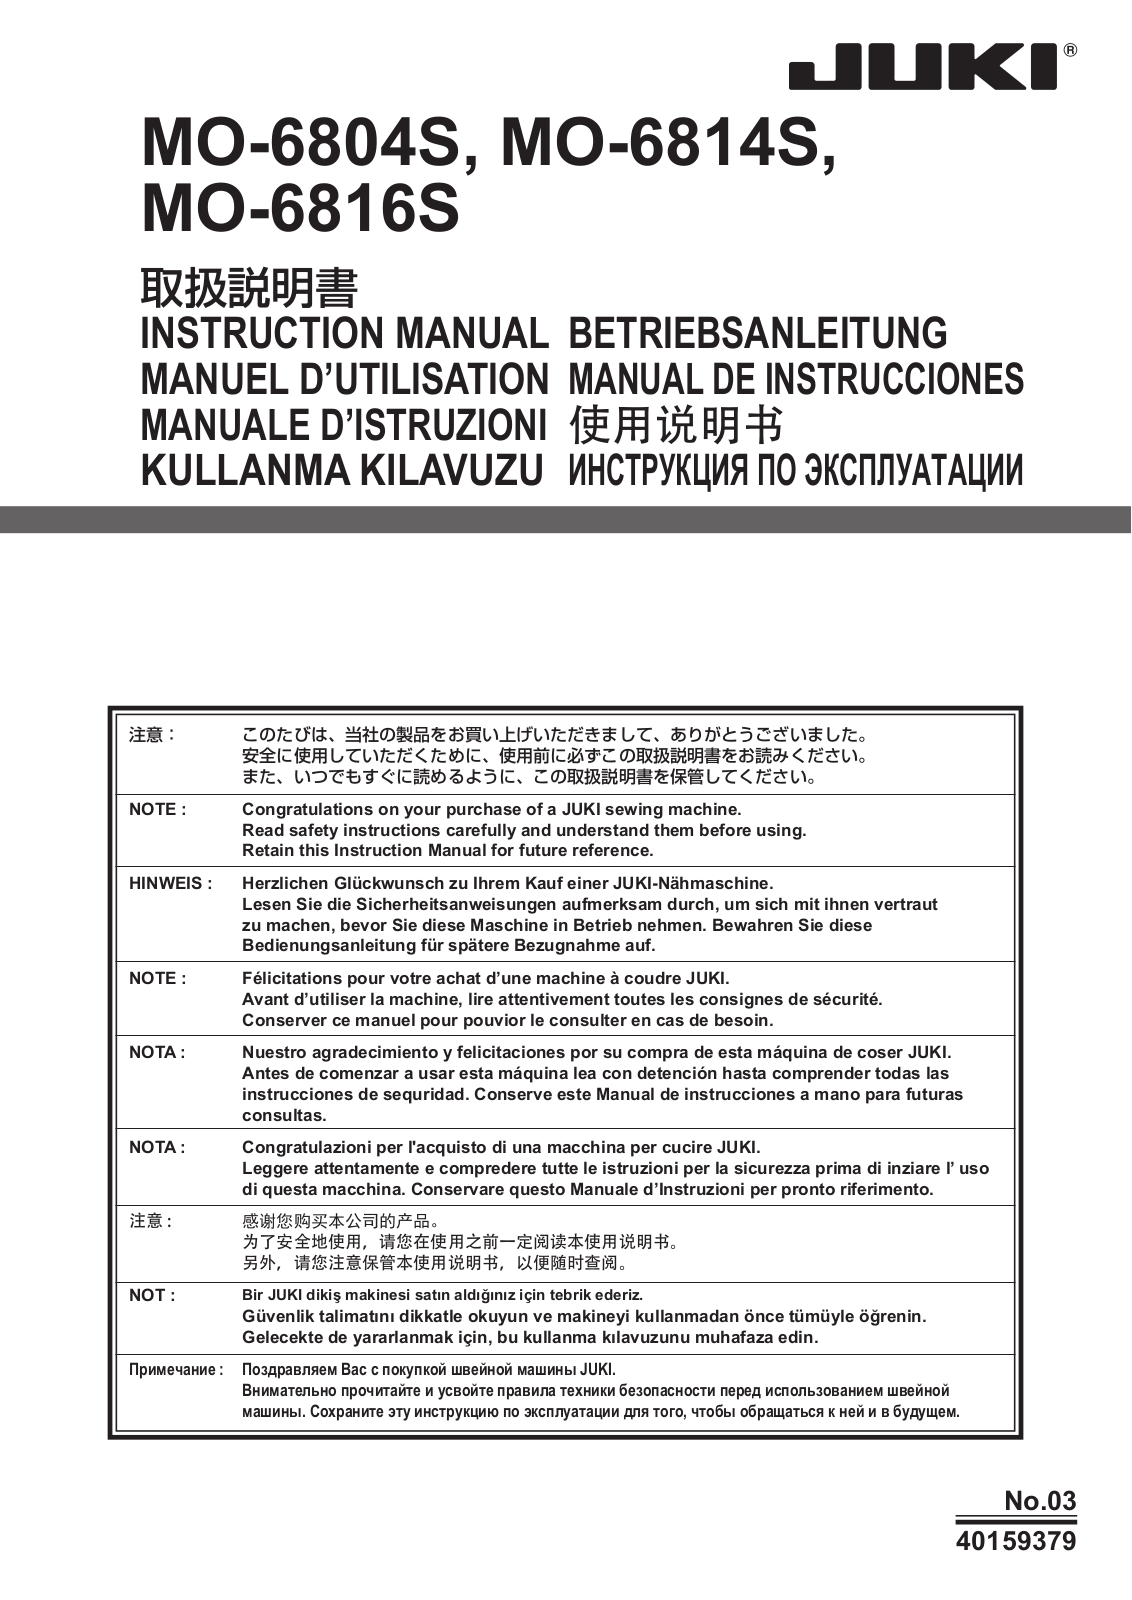 Juki MO-6804S, MO-6814S, MO-6816S Instruction Manual